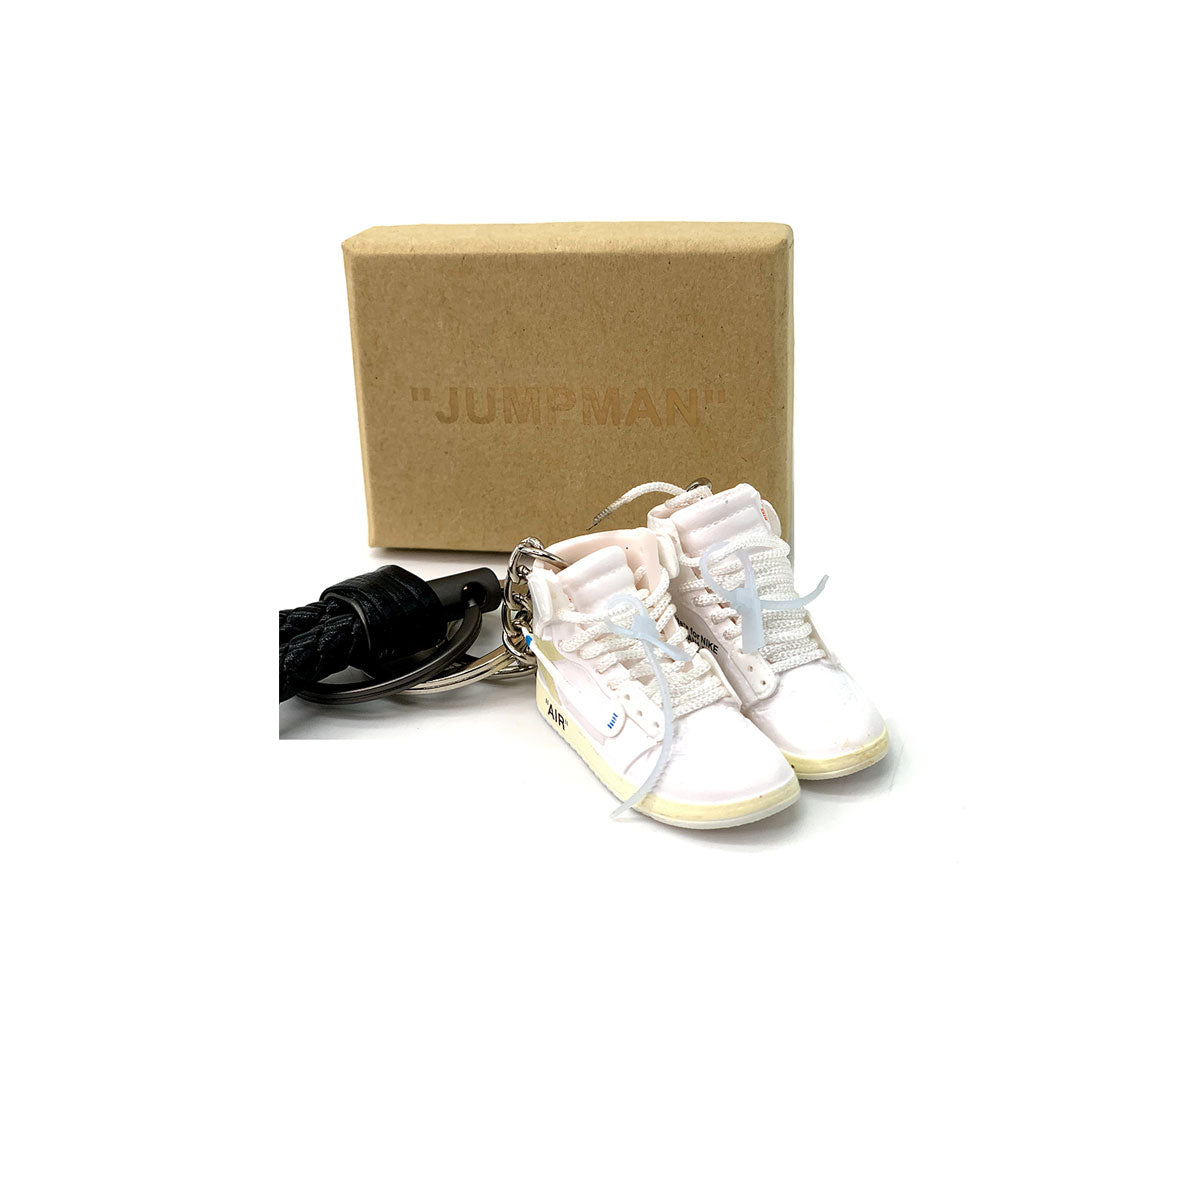 3D Sneaker Keychain- Air Jordan 1 High Off-White White Pair